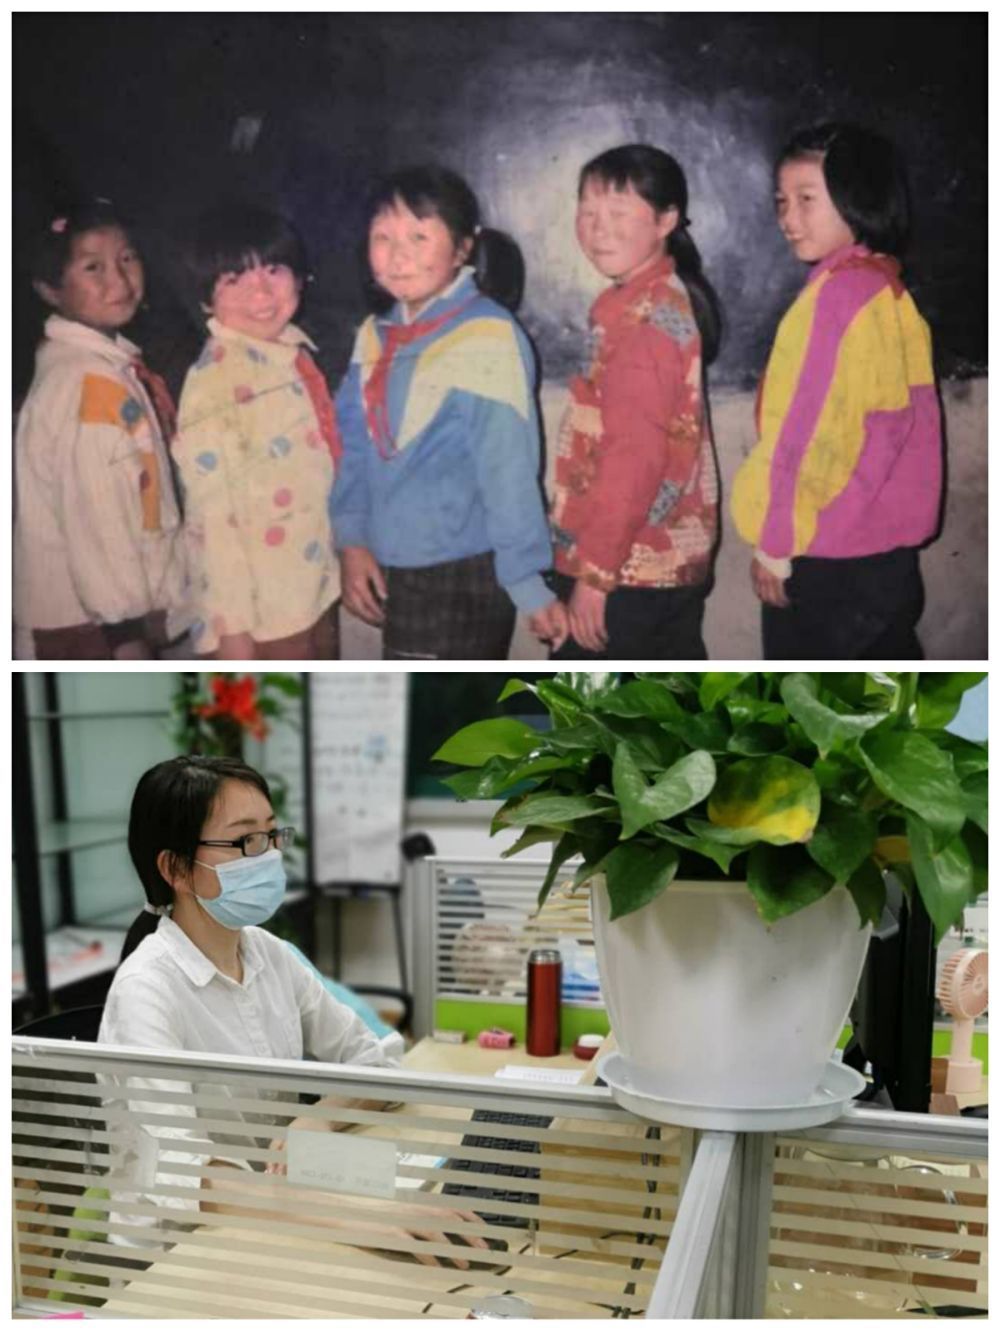 今天，中国第一所希望小学30岁了